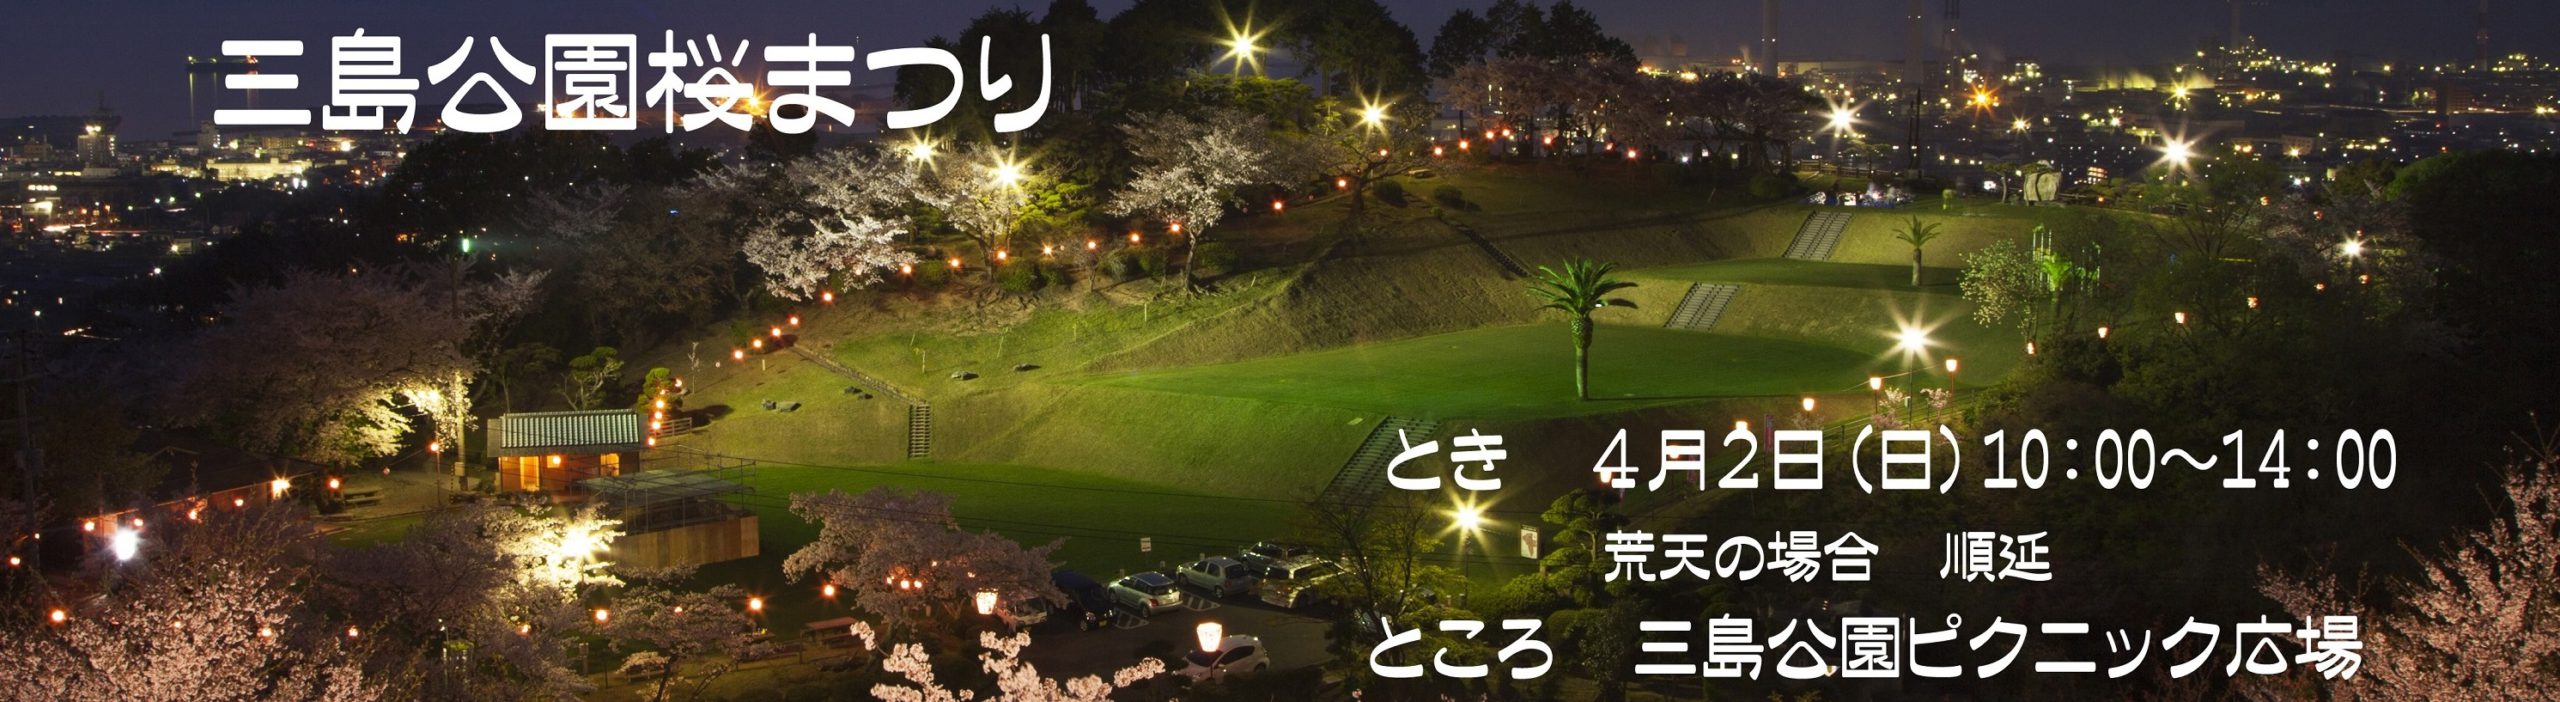 三島公園桜まつり